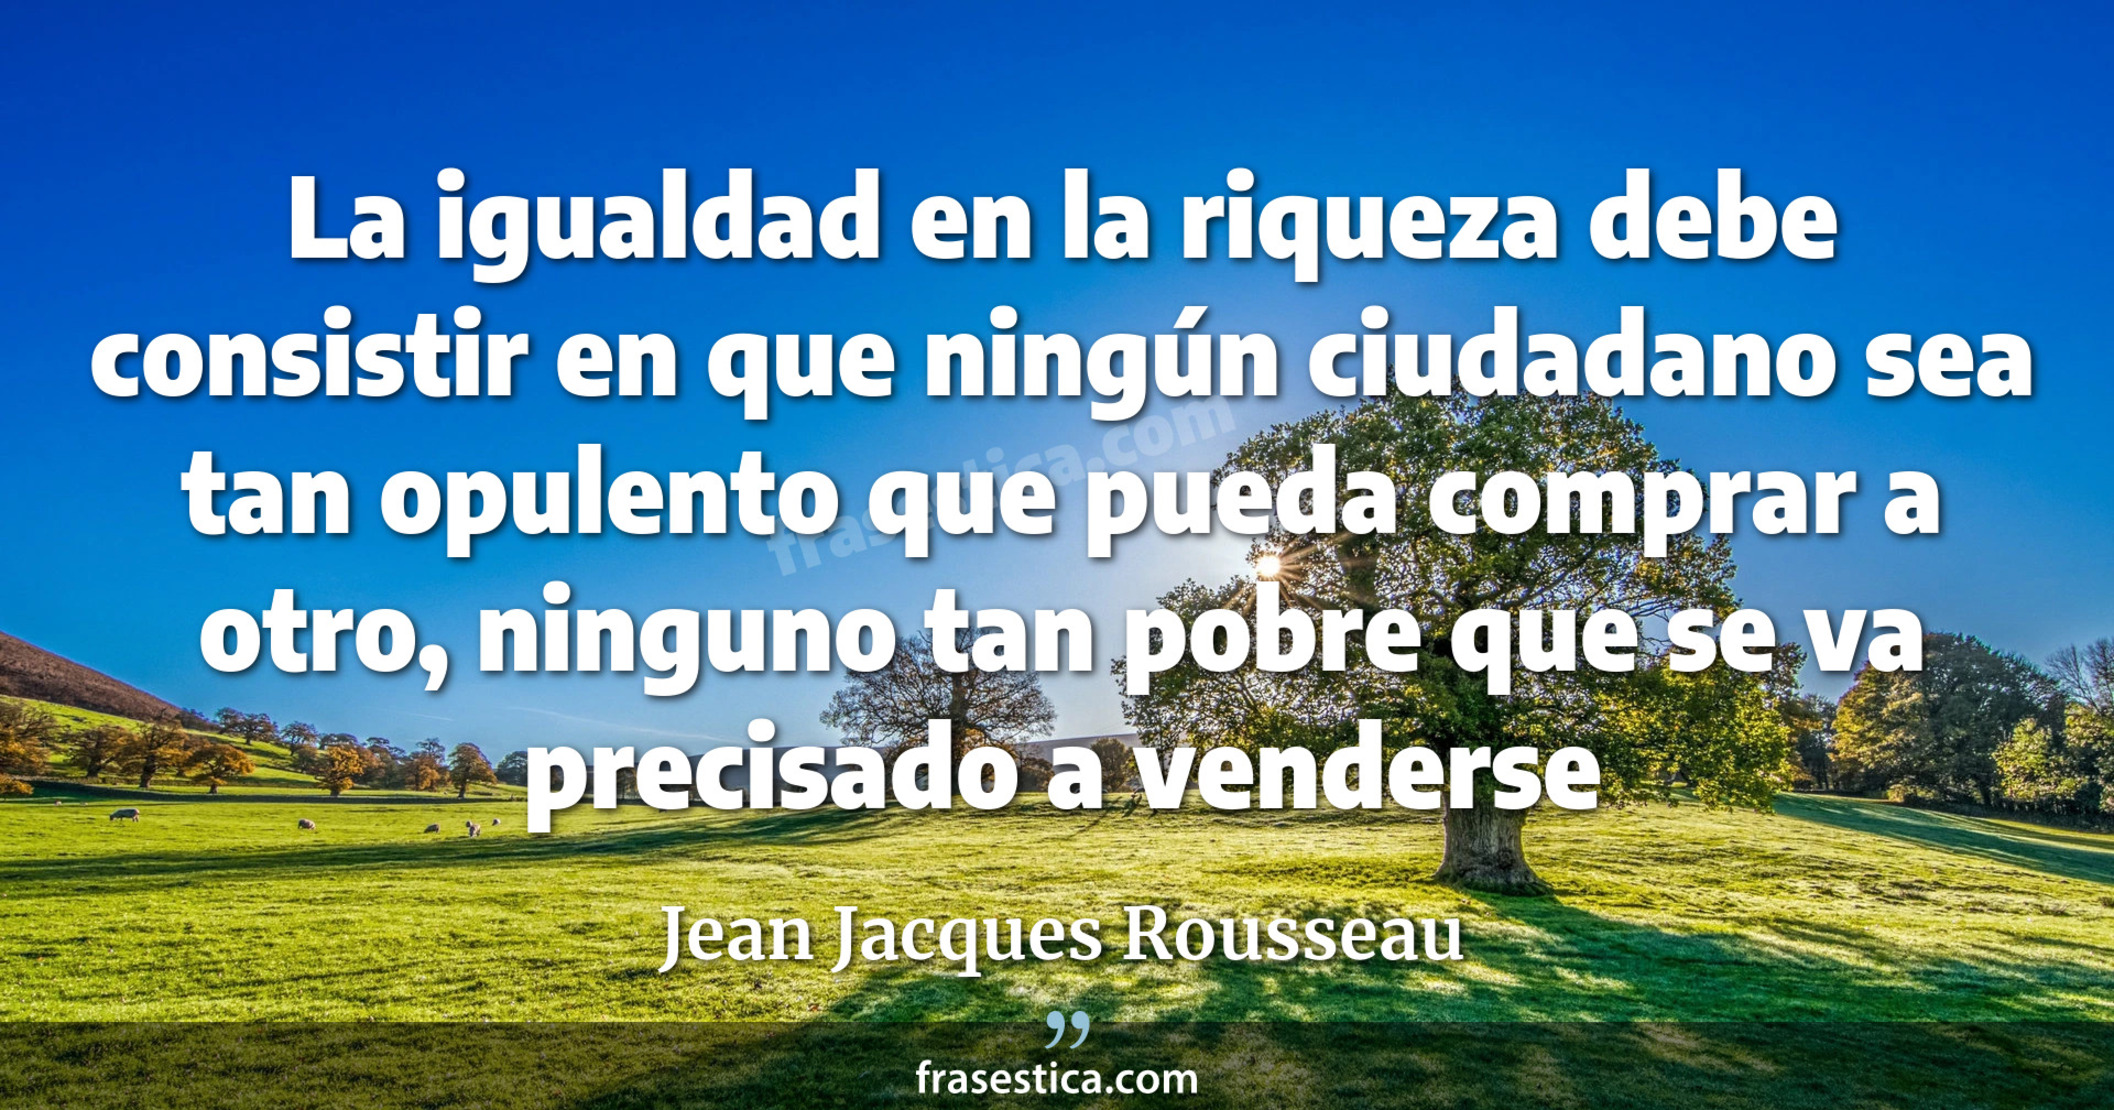 La igualdad en la riqueza debe consistir en que ningún ciudadano sea tan opulento que pueda comprar a otro, ninguno tan pobre que se va precisado a venderse - Jean Jacques Rousseau